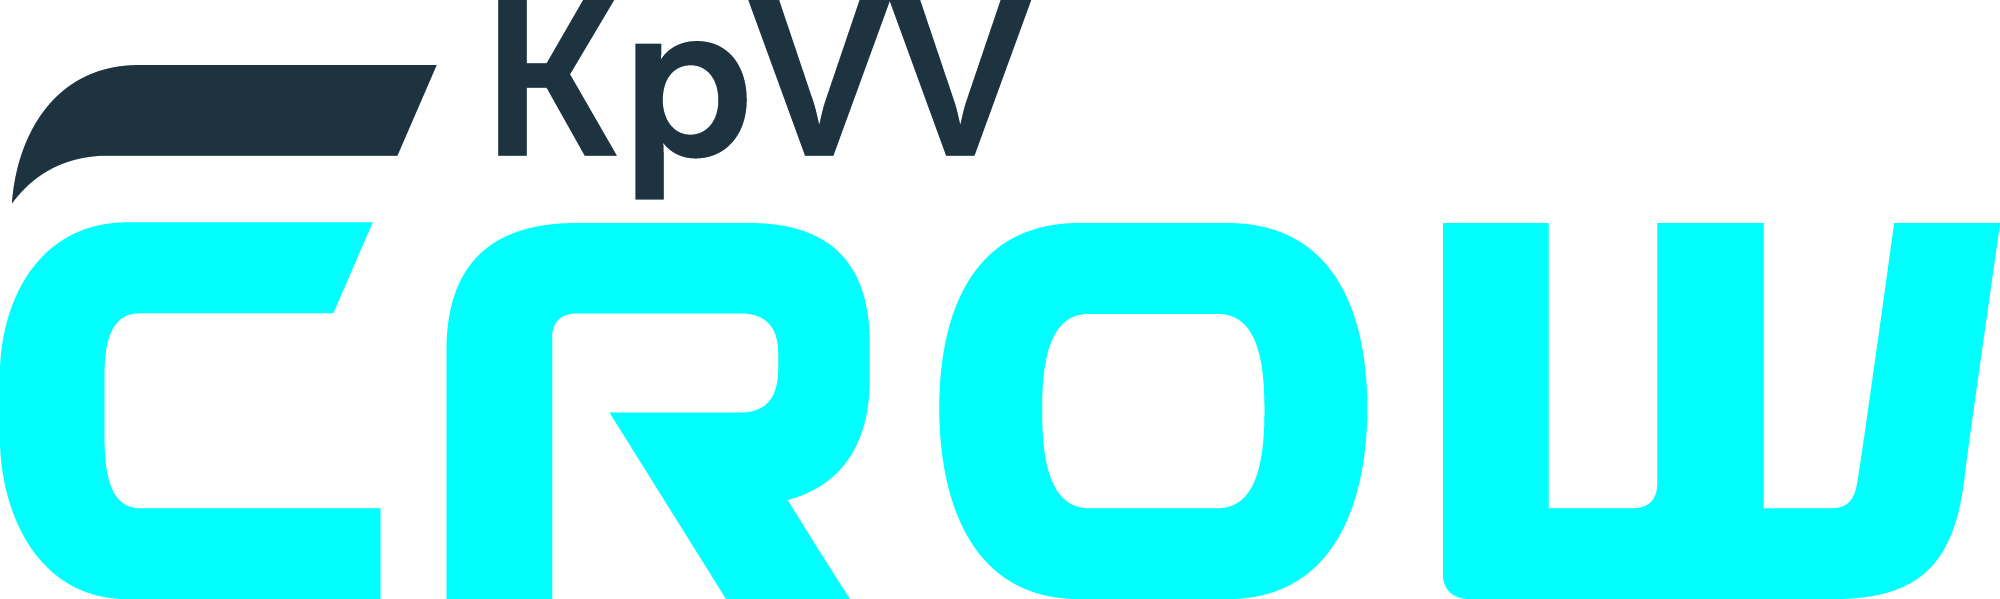 CROW-KpVV